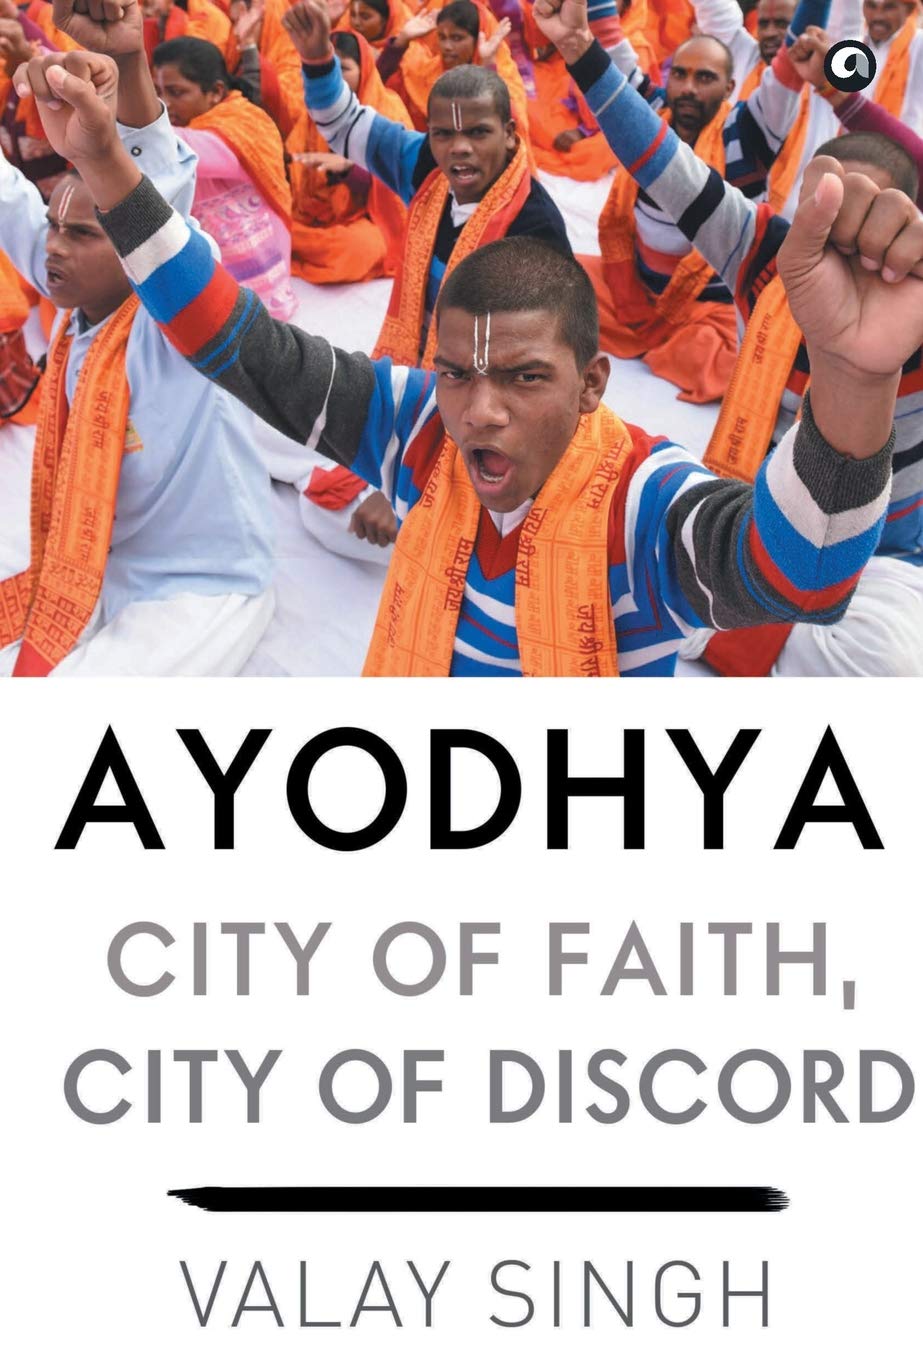 Ayodhya: City of Faith, City of Discord